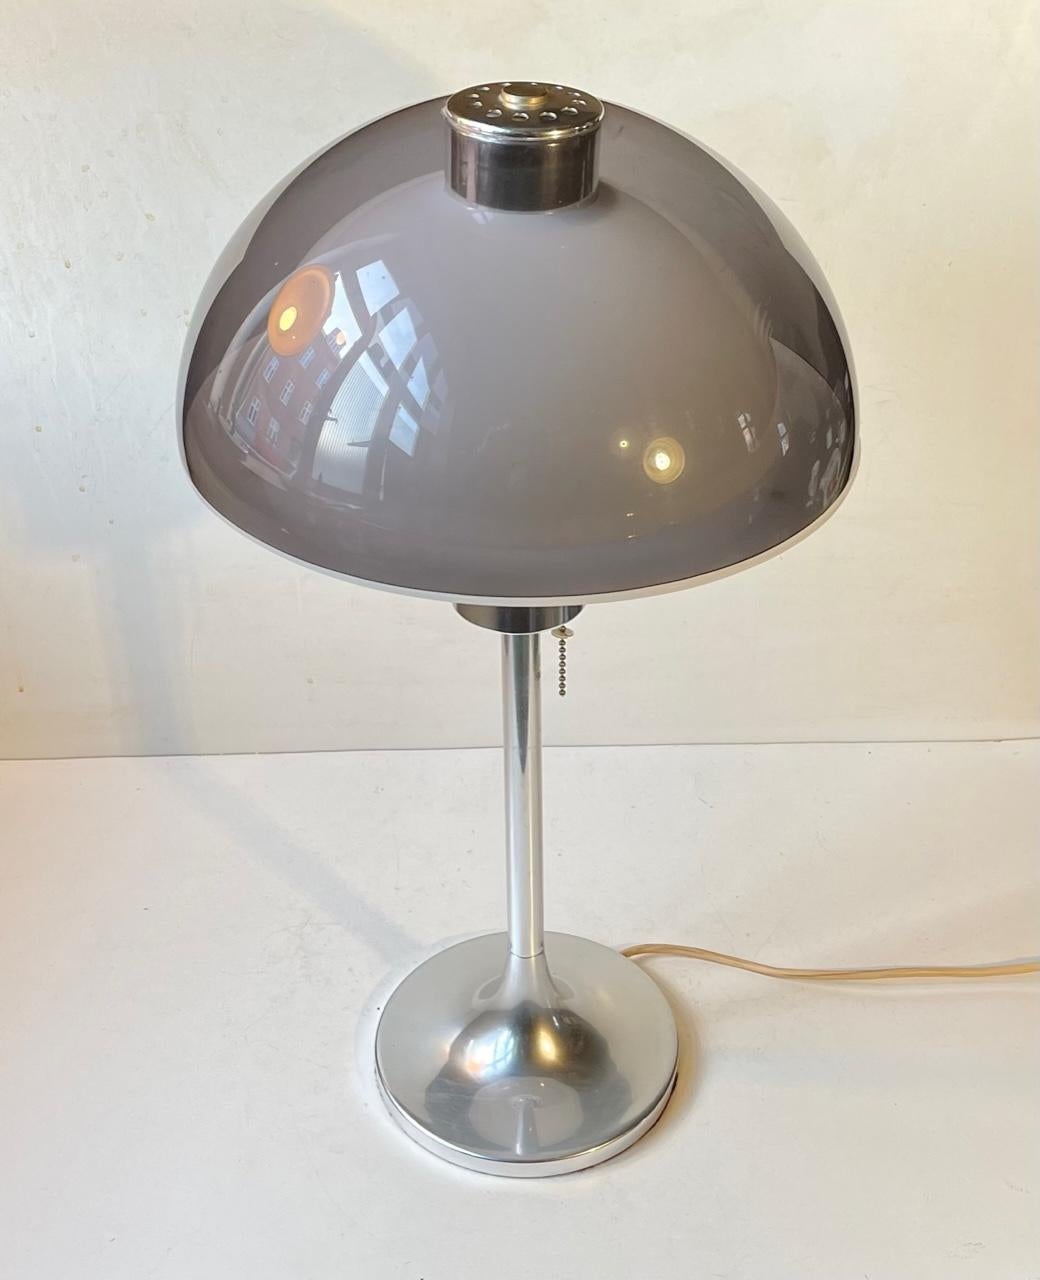 Une élégante lampe de table ou de bureau de l'ère spatiale conçue en 1966 par Robert Welch et fabriquée par Lumitron en Angleterre. Diffuseur intérieur en plastique blanc avec dôme extérieur en acrylique transparent gris. Il est doté d'une base en